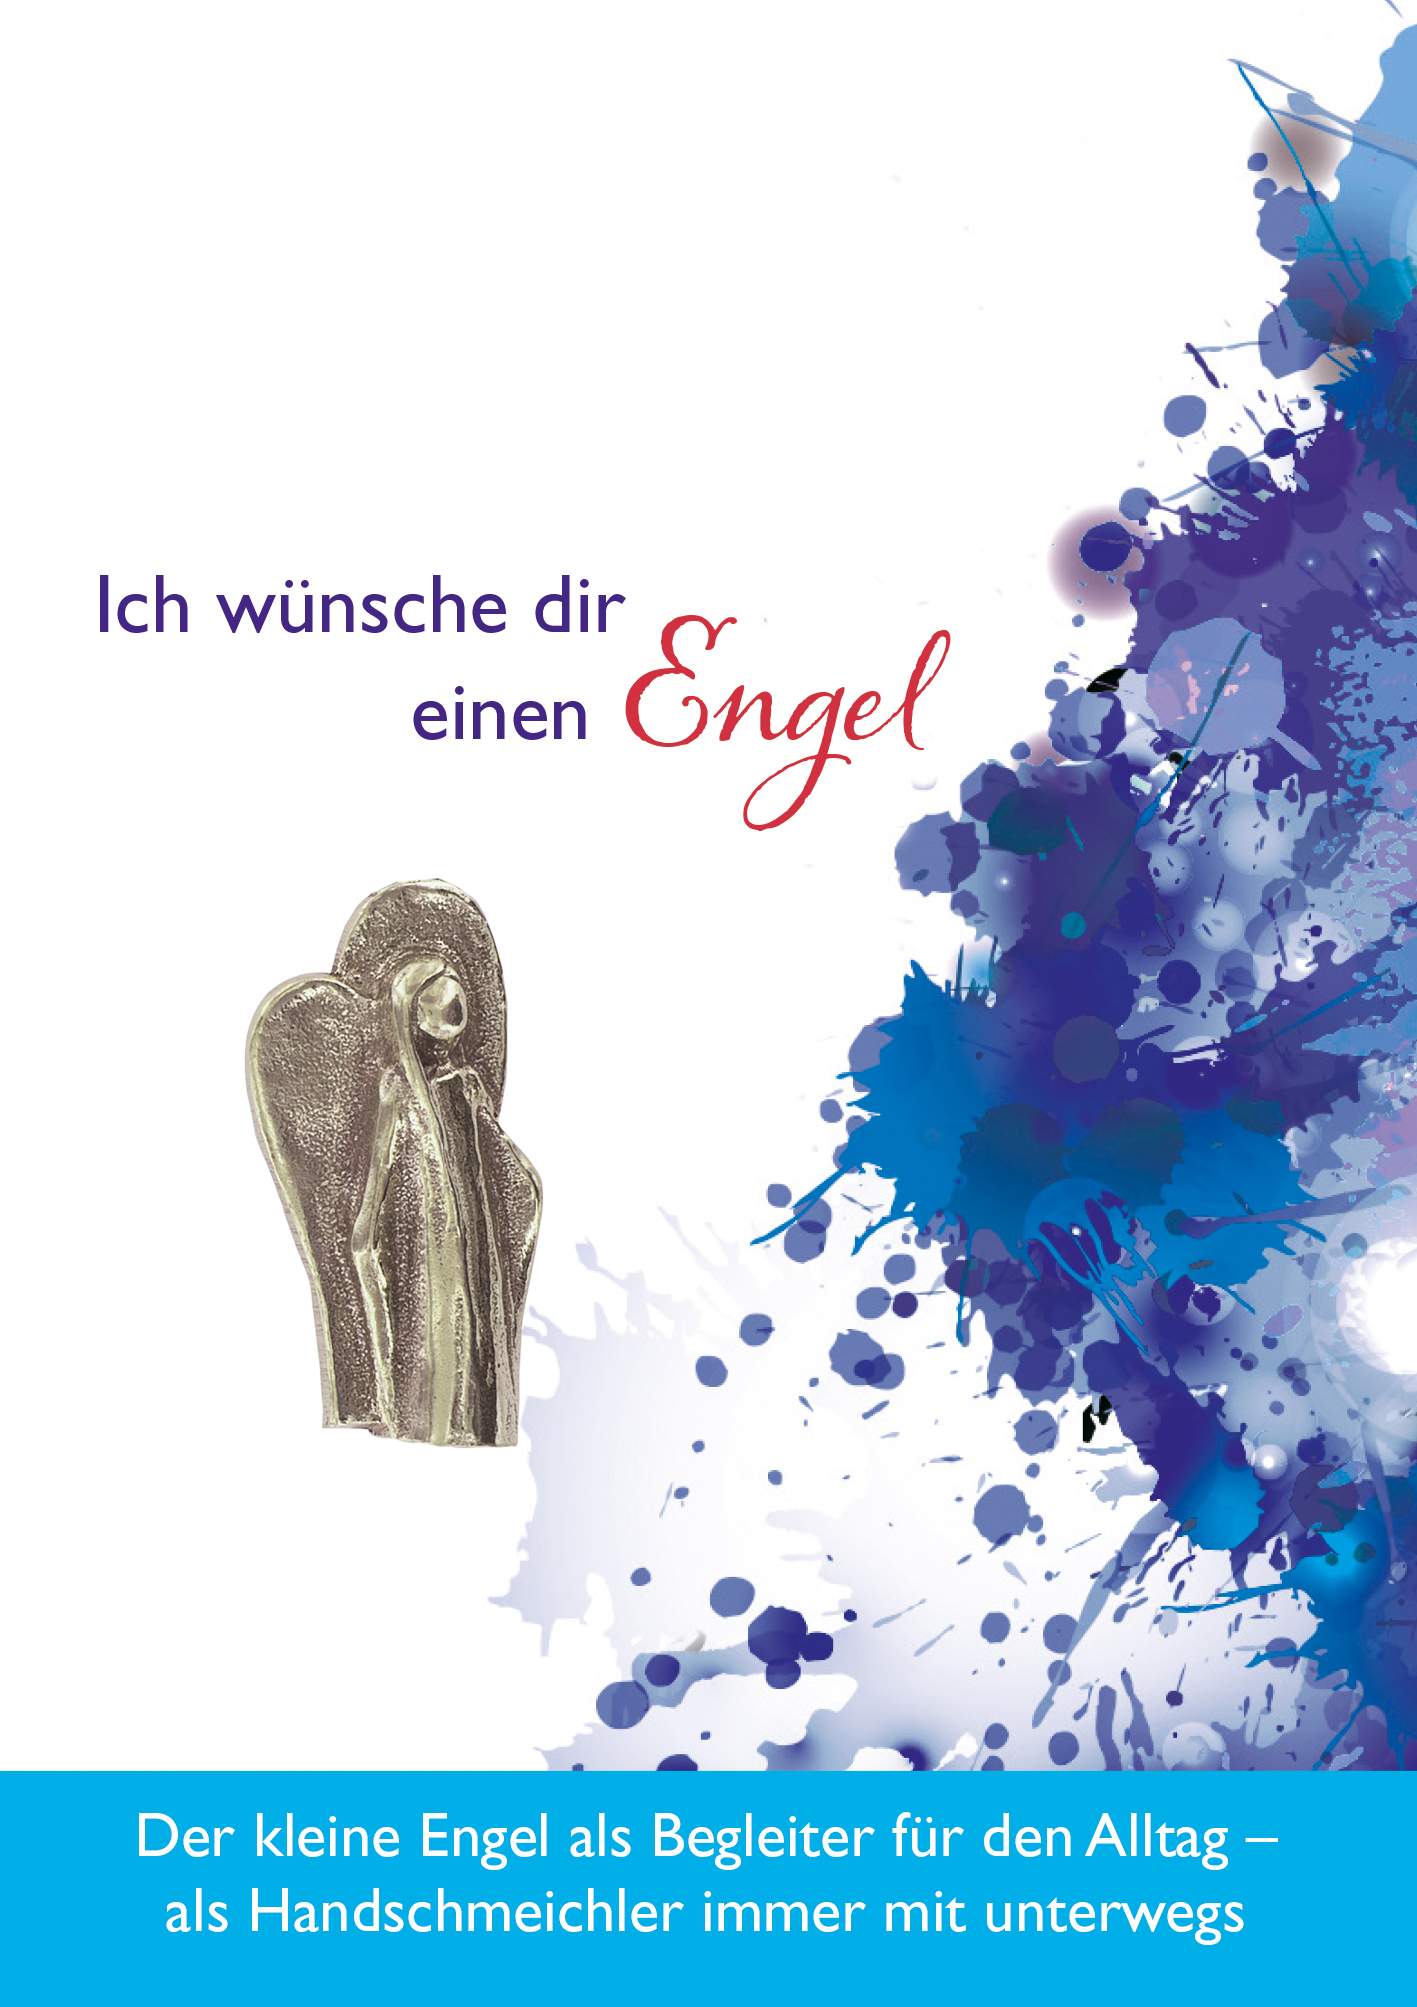 Handschmeichler - Engel & Neusilber